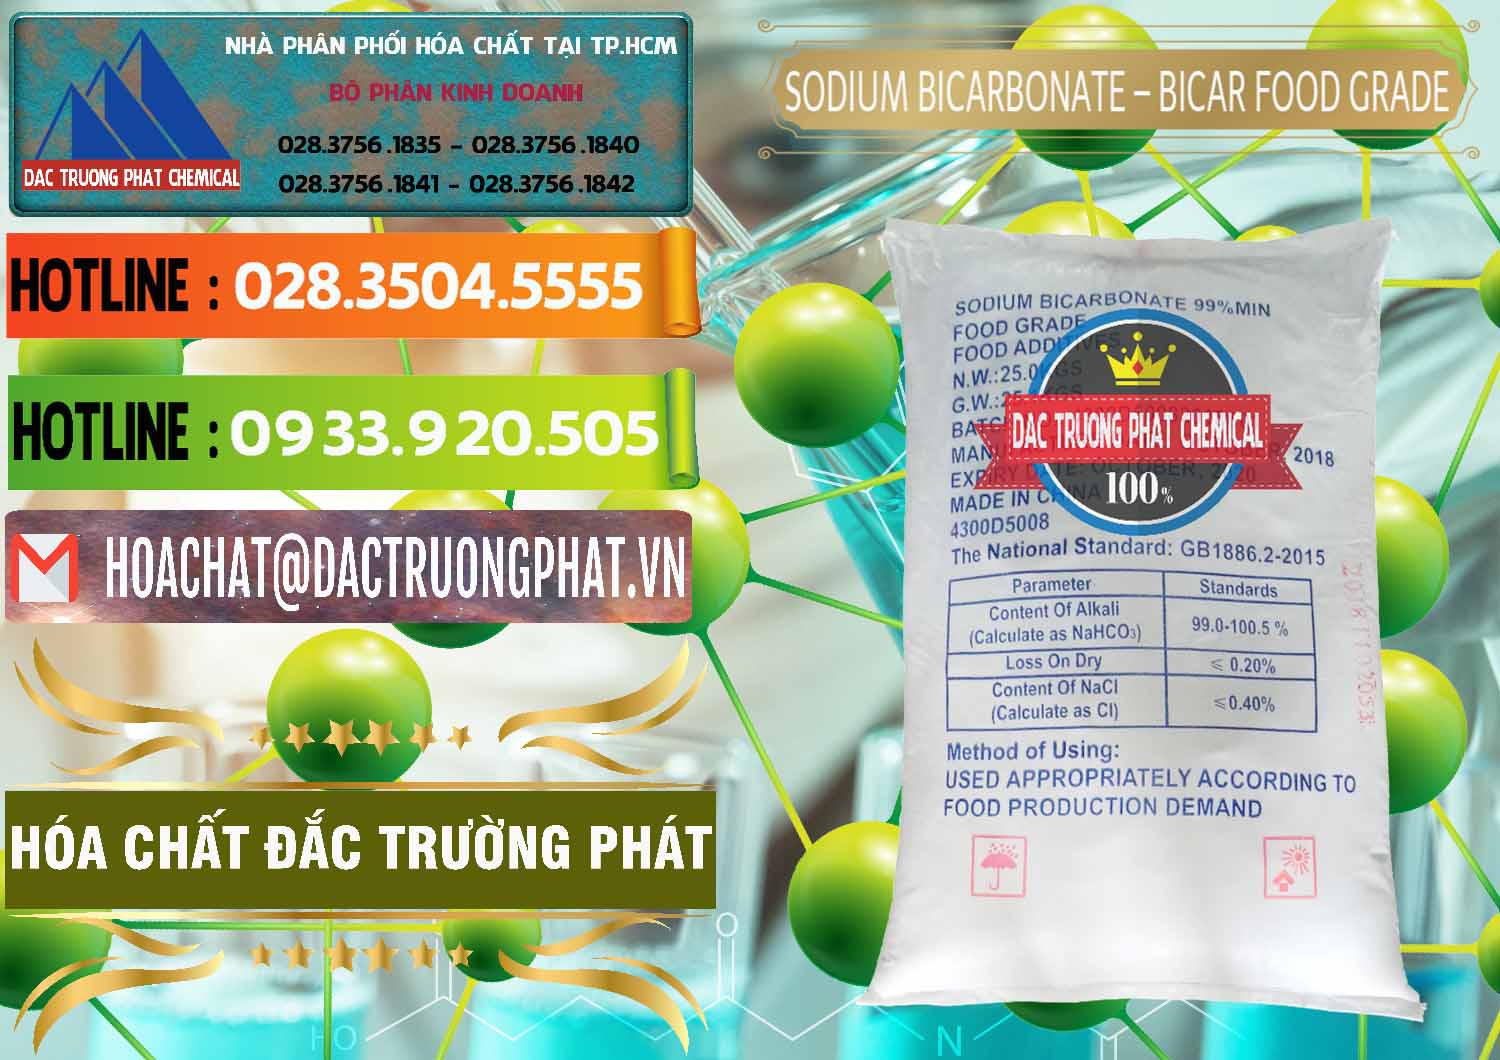 Cty chuyên kinh doanh - bán Sodium Bicarbonate – Bicar NaHCO3 Food Grade Trung Quốc China - 0138 - Phân phối & kinh doanh hóa chất tại TP.HCM - cungcaphoachat.com.vn